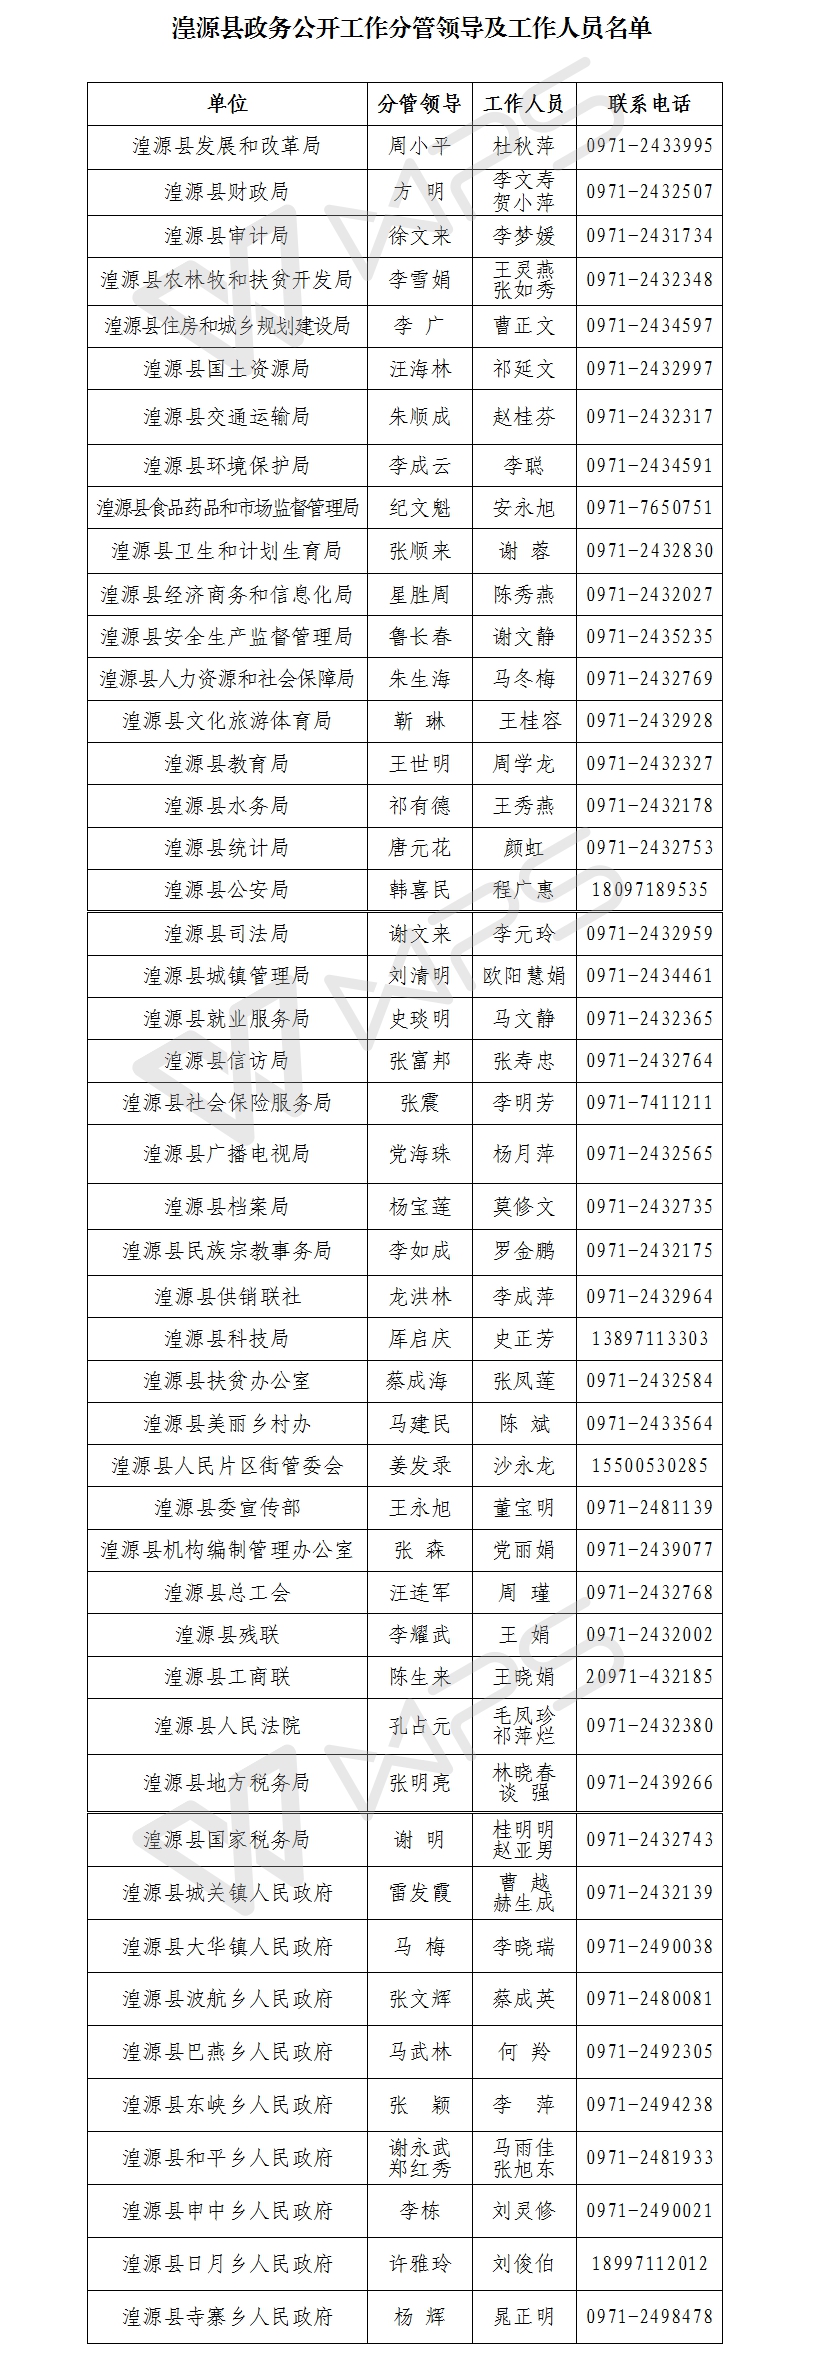 湟源县政务公开工作分管领导及工作人员名单.jpg